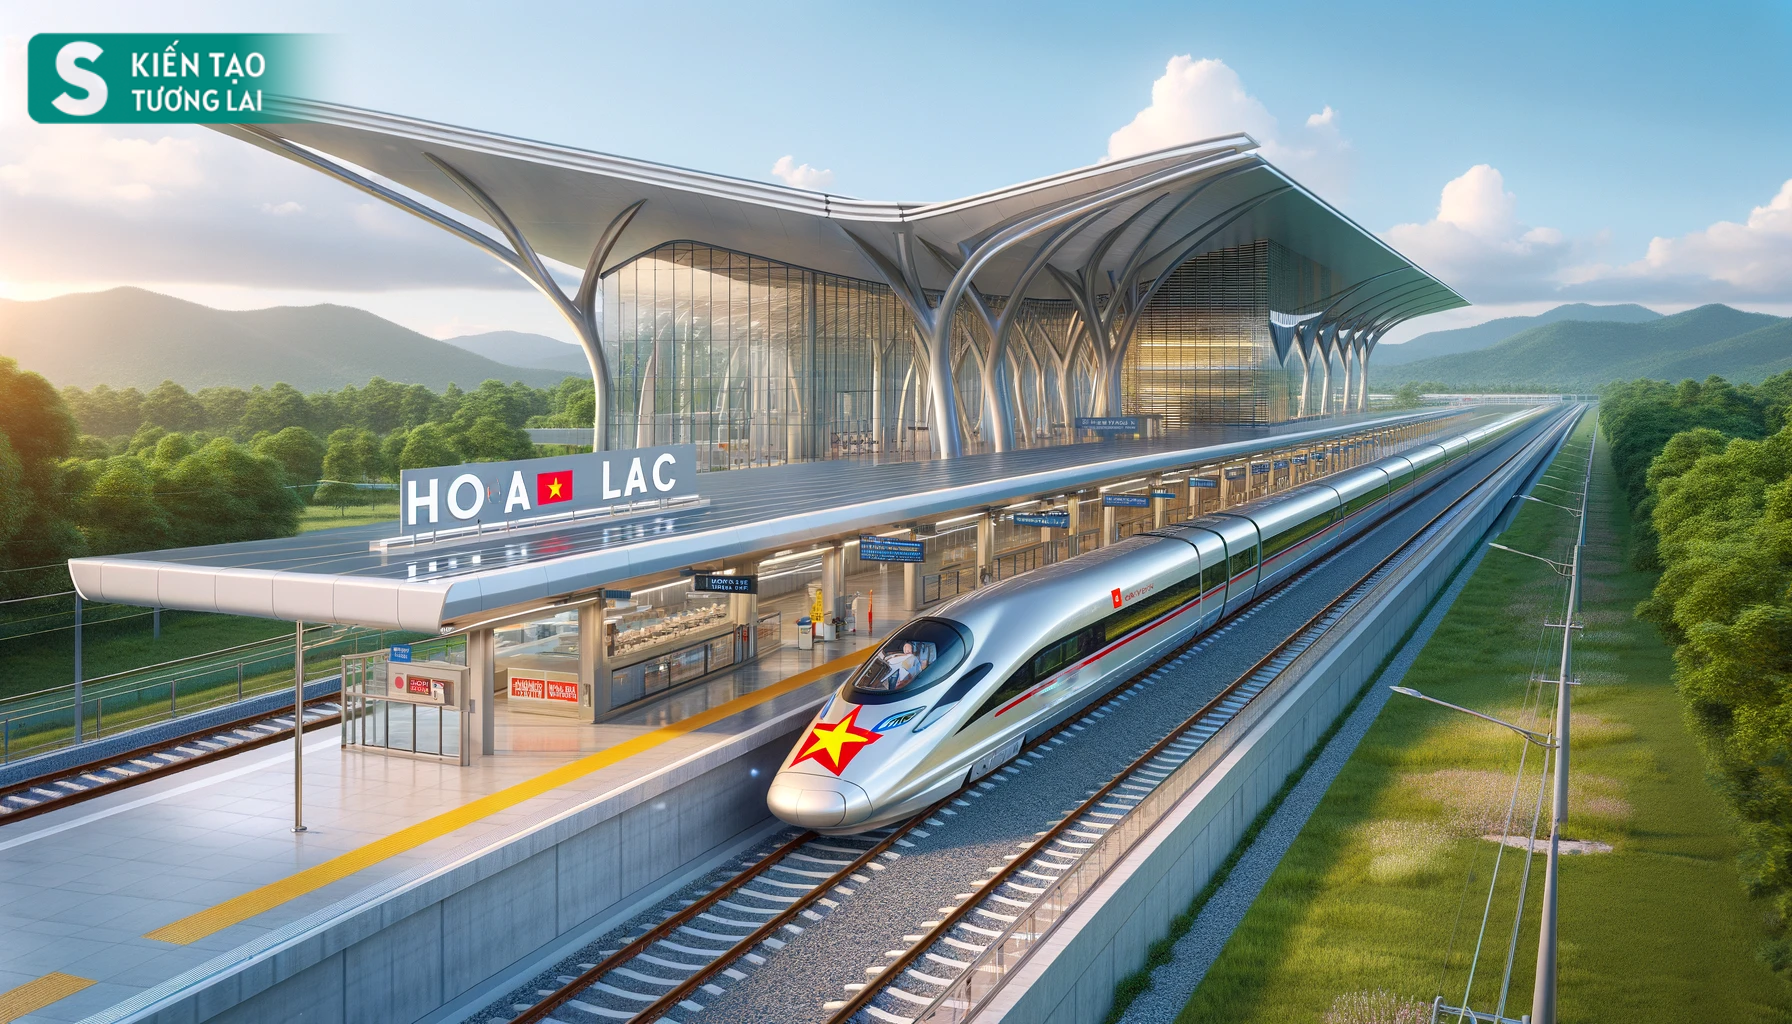 'Ông lớn' thế giới hứa rót cho Việt Nam 11 tỷ USD, 2 dự án đường sắt nào được ưu tiên gọi tên?- Ảnh 2.